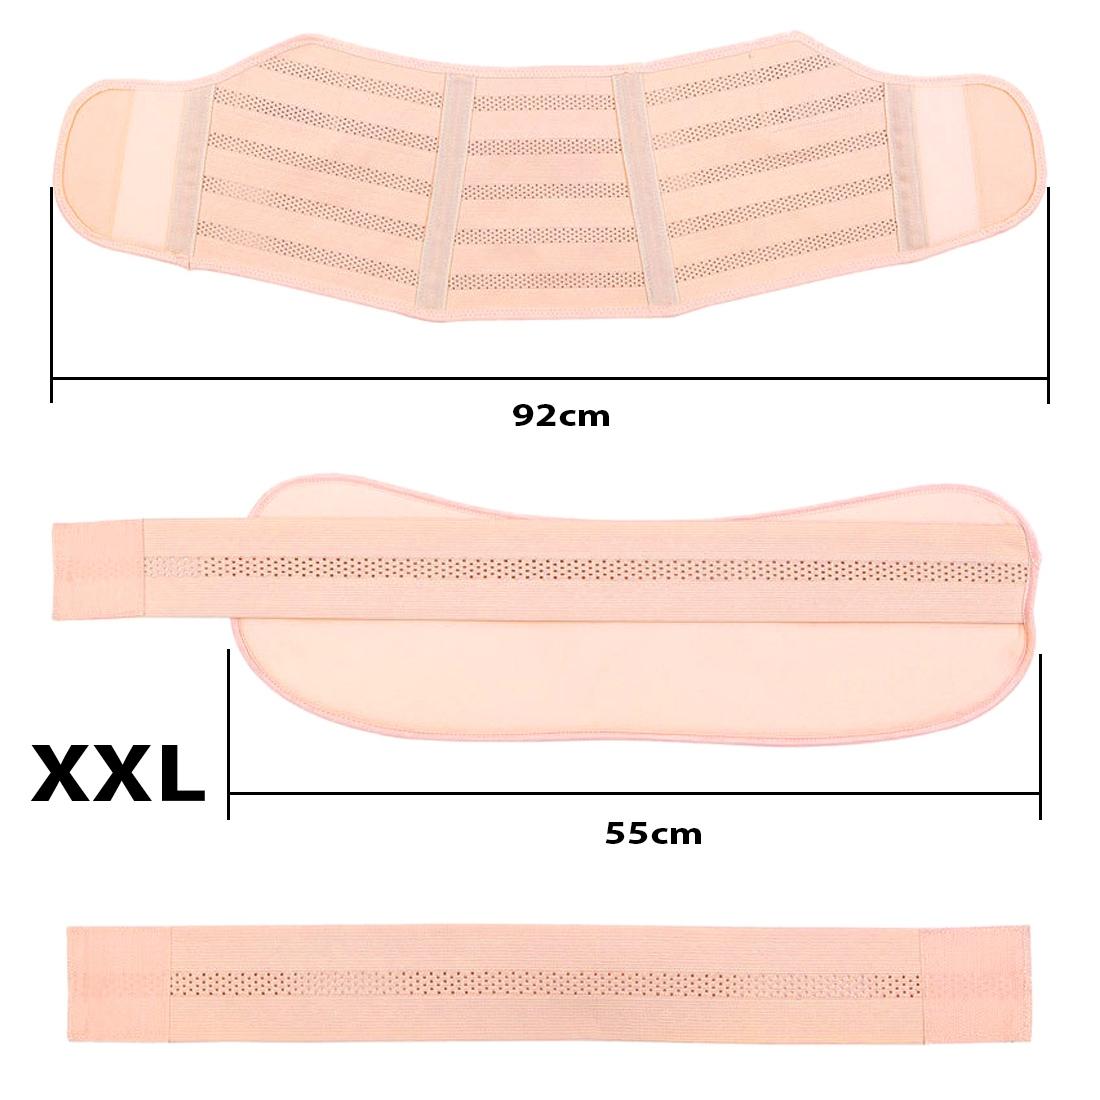 Фото 1 Бандаж для беременных XXL эластичный пояс на липучках UFT Bandage